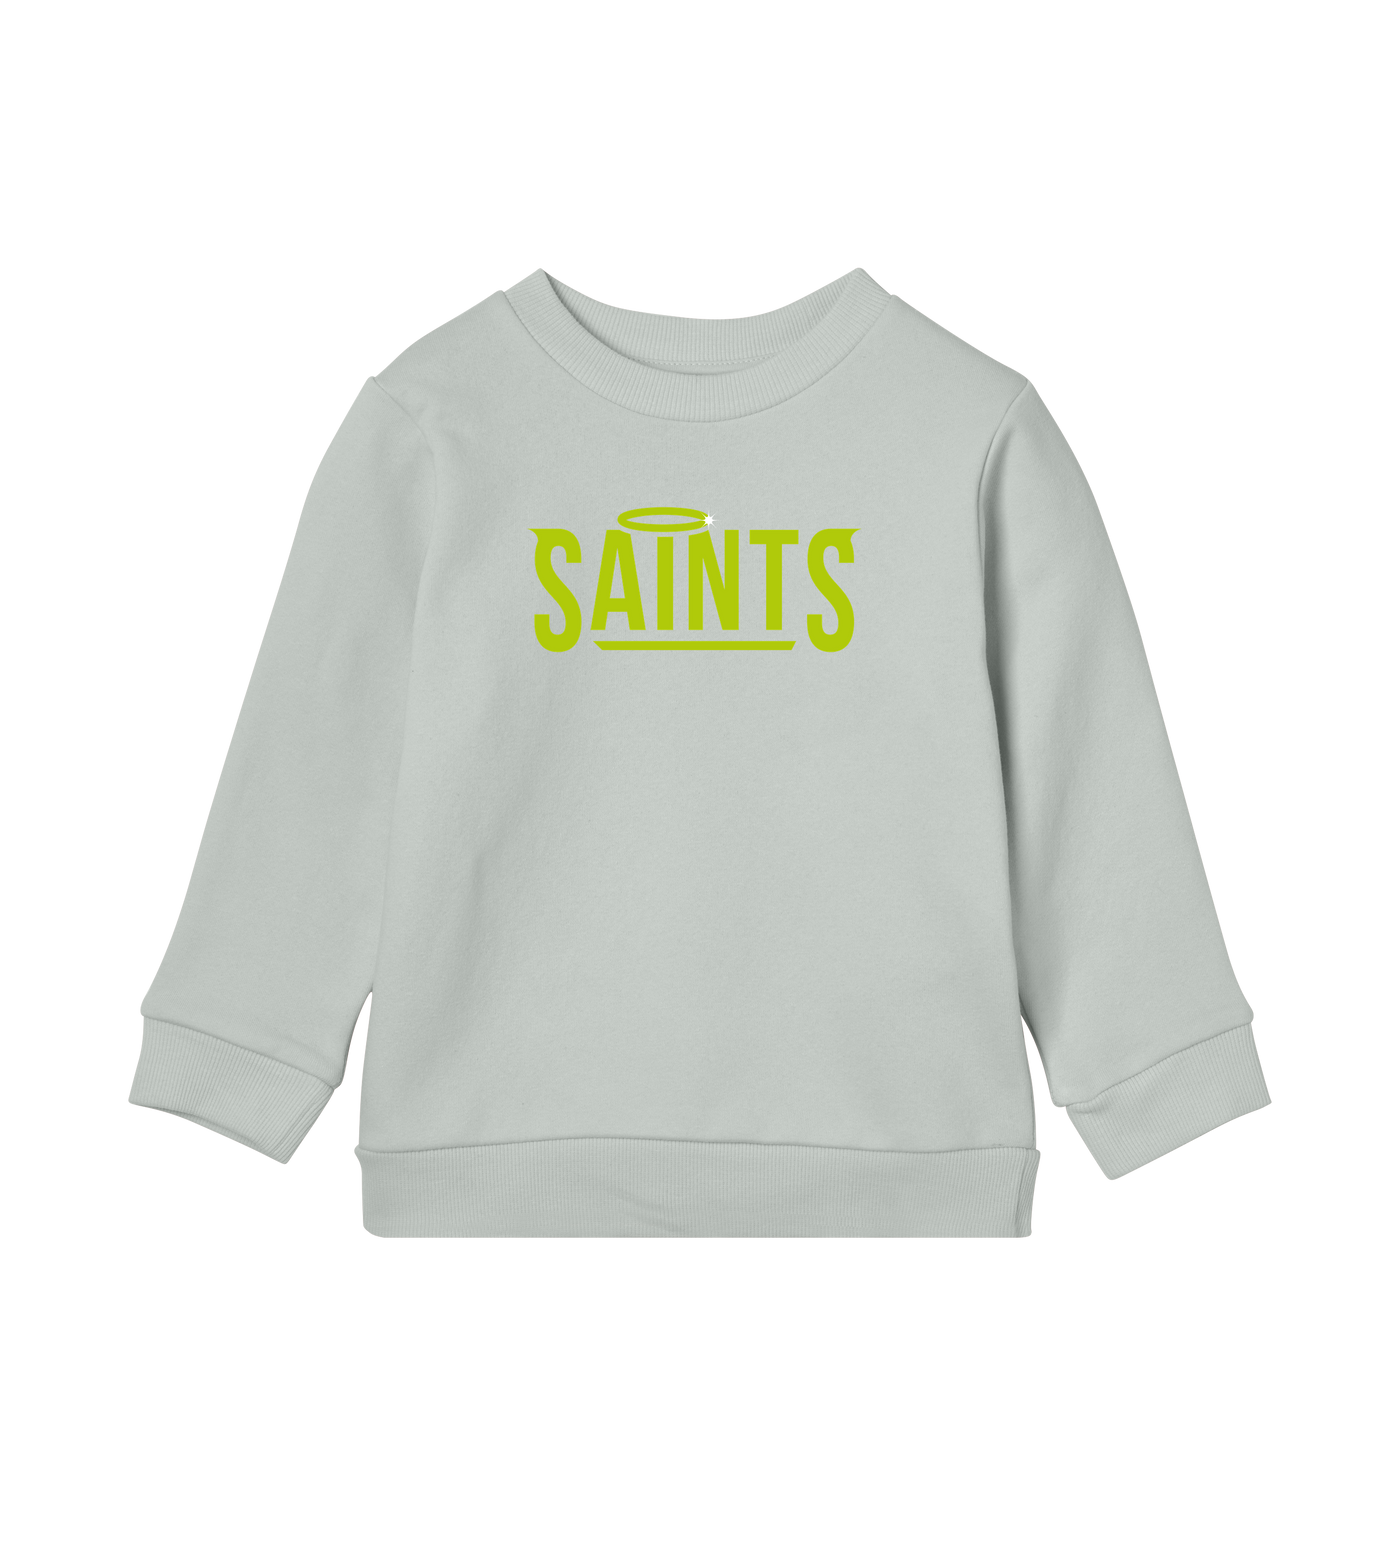 Nässjö Saints Kids Sweatshirt - Premium sweatshirt from REYRR STUDIO - Shop now at Reyrr Athletics